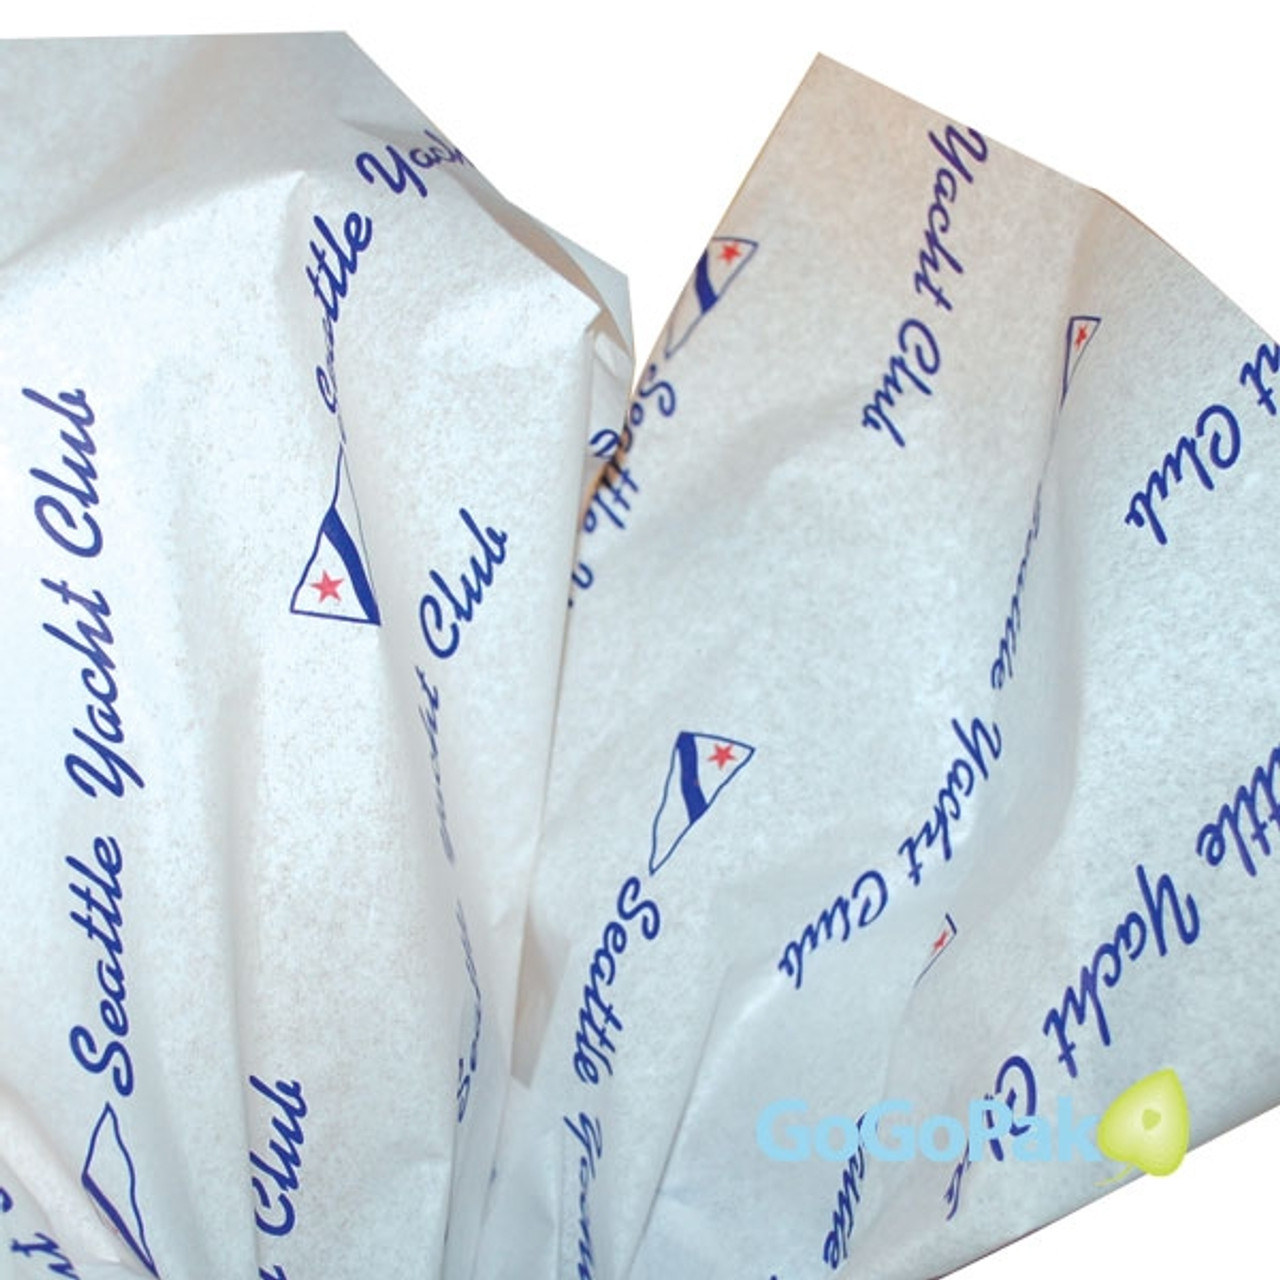 Custom Printed Tissue Paper-Kraft or White Tissue